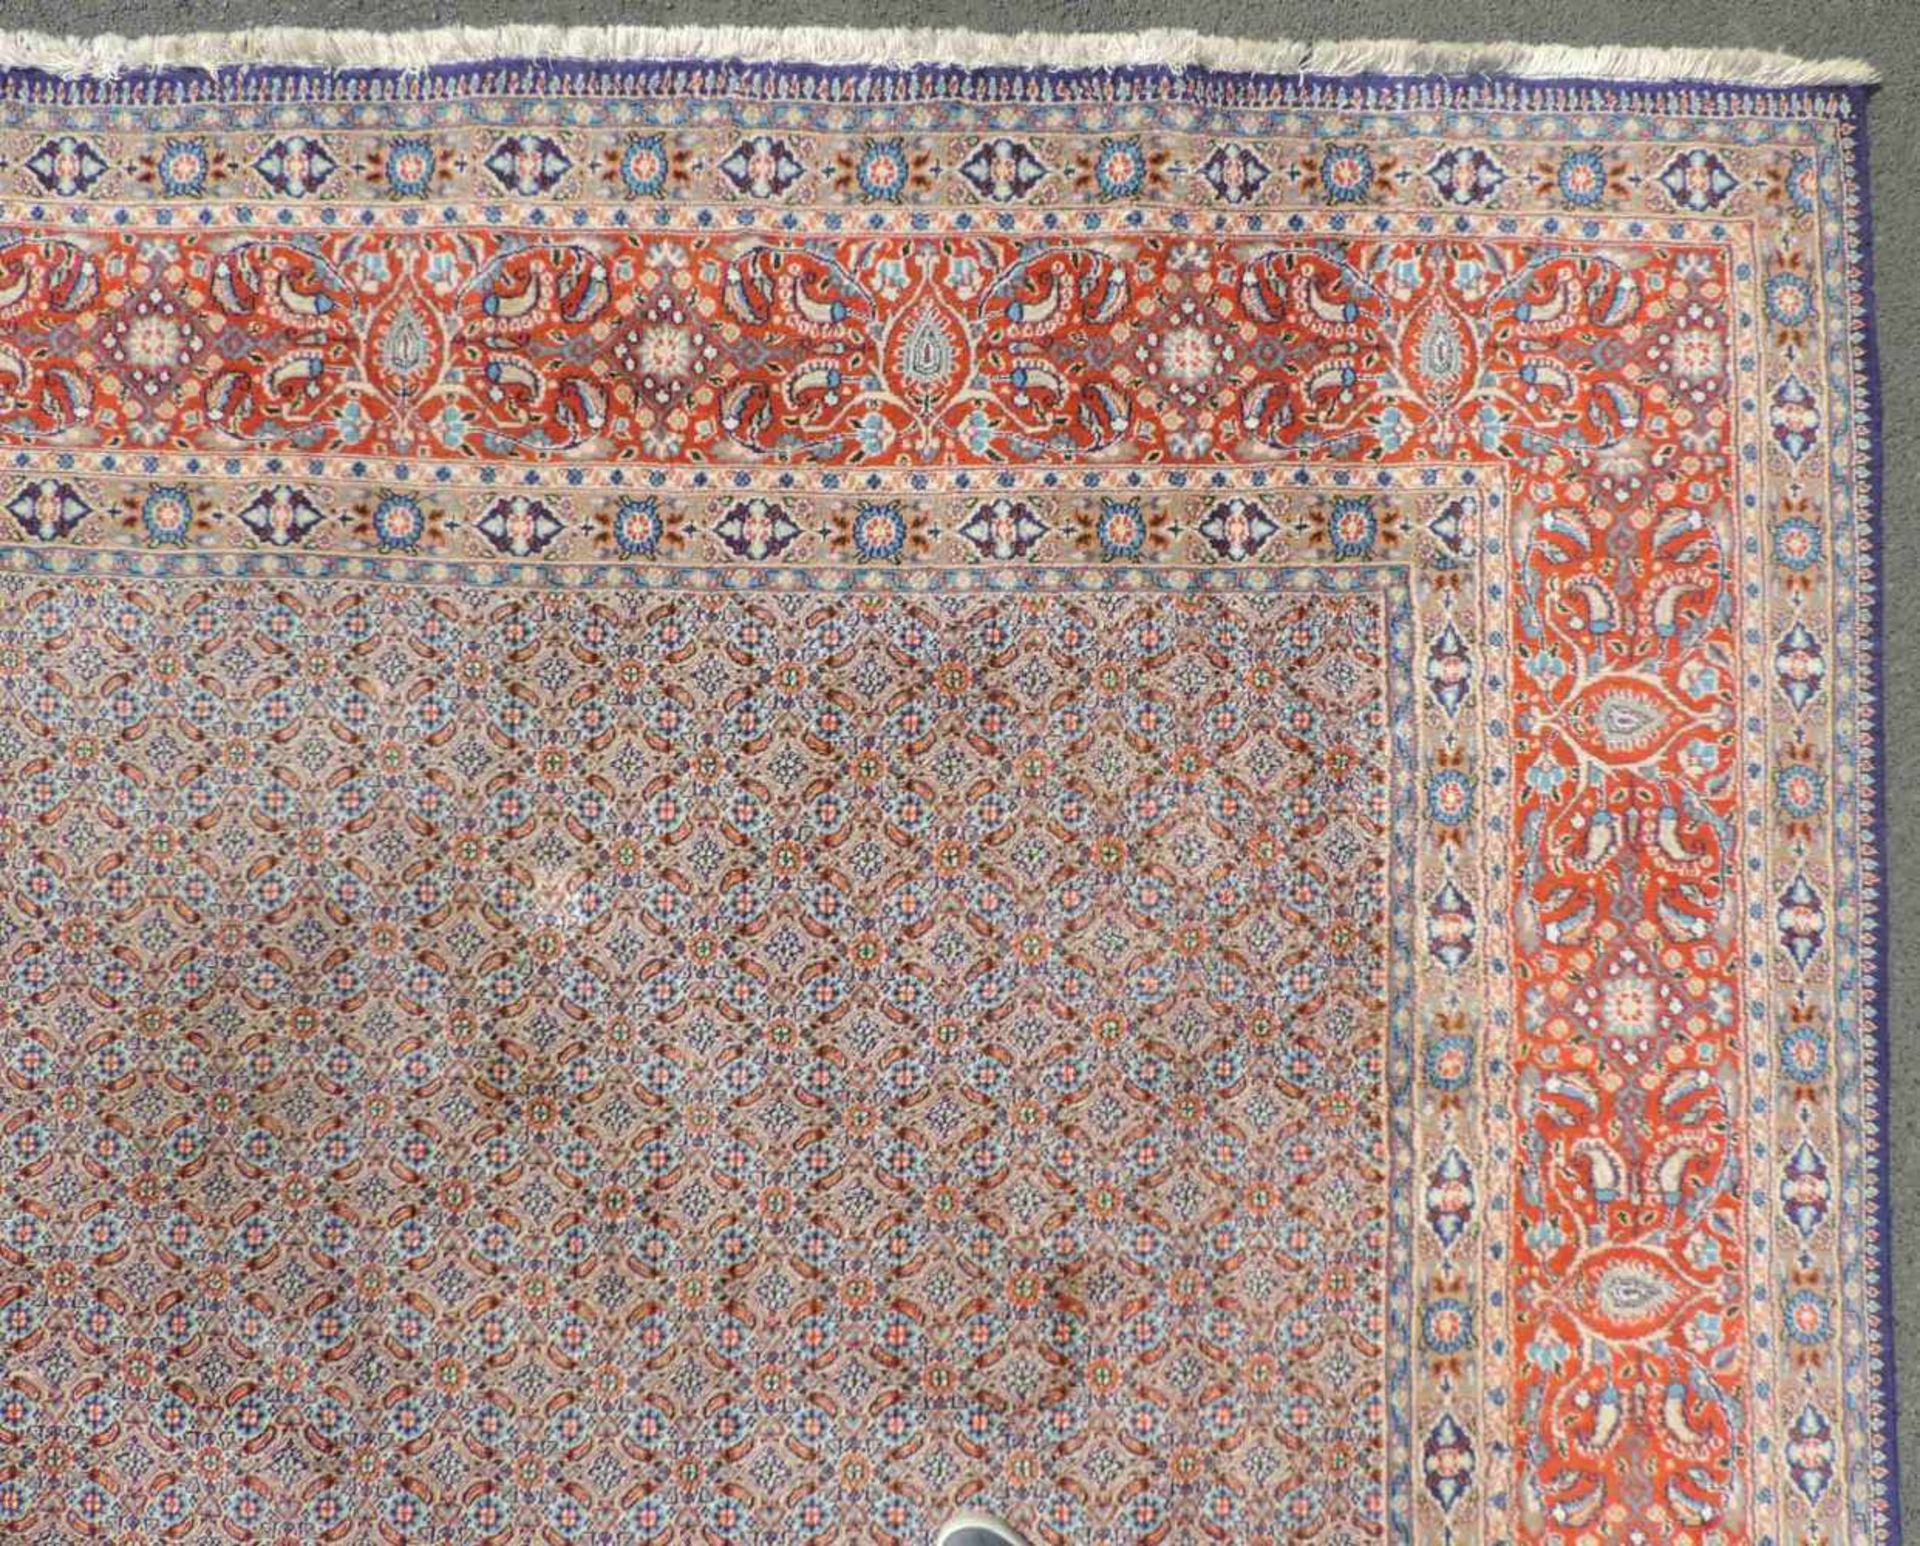 Moud Perserteppich. Iran. 406 cm x 300 cm. Handgeknüpft. Wolle auf Baumwolle. Zustand siehe Fotos. - Bild 8 aus 10